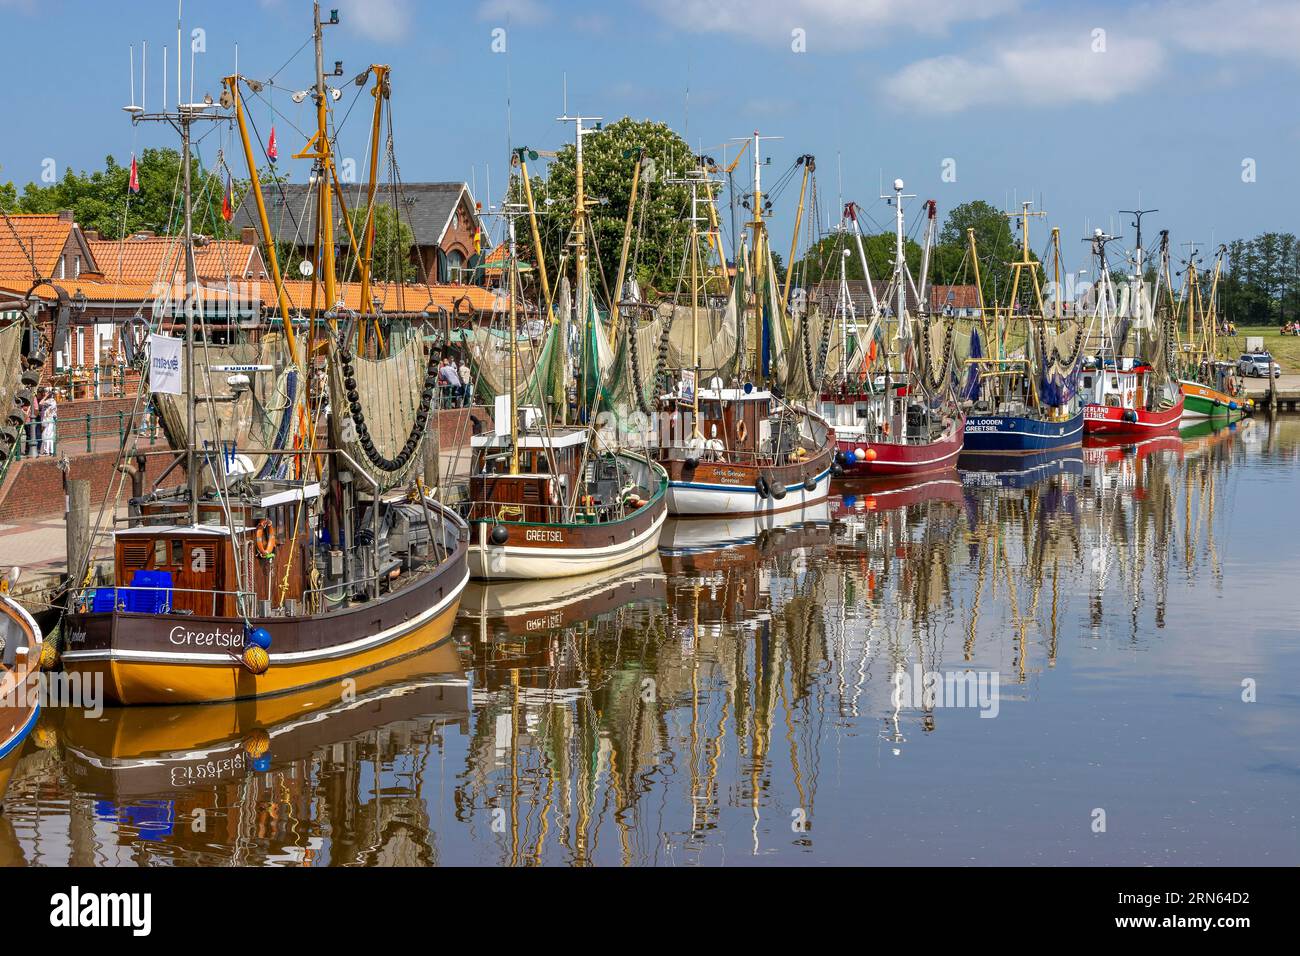 Coupe-crabe avec réflexion dans l'eau dans le port de Greetsiel, Greetsiel, Frise orientale, mer du Nord, Basse-Saxe, Allemagne Banque D'Images